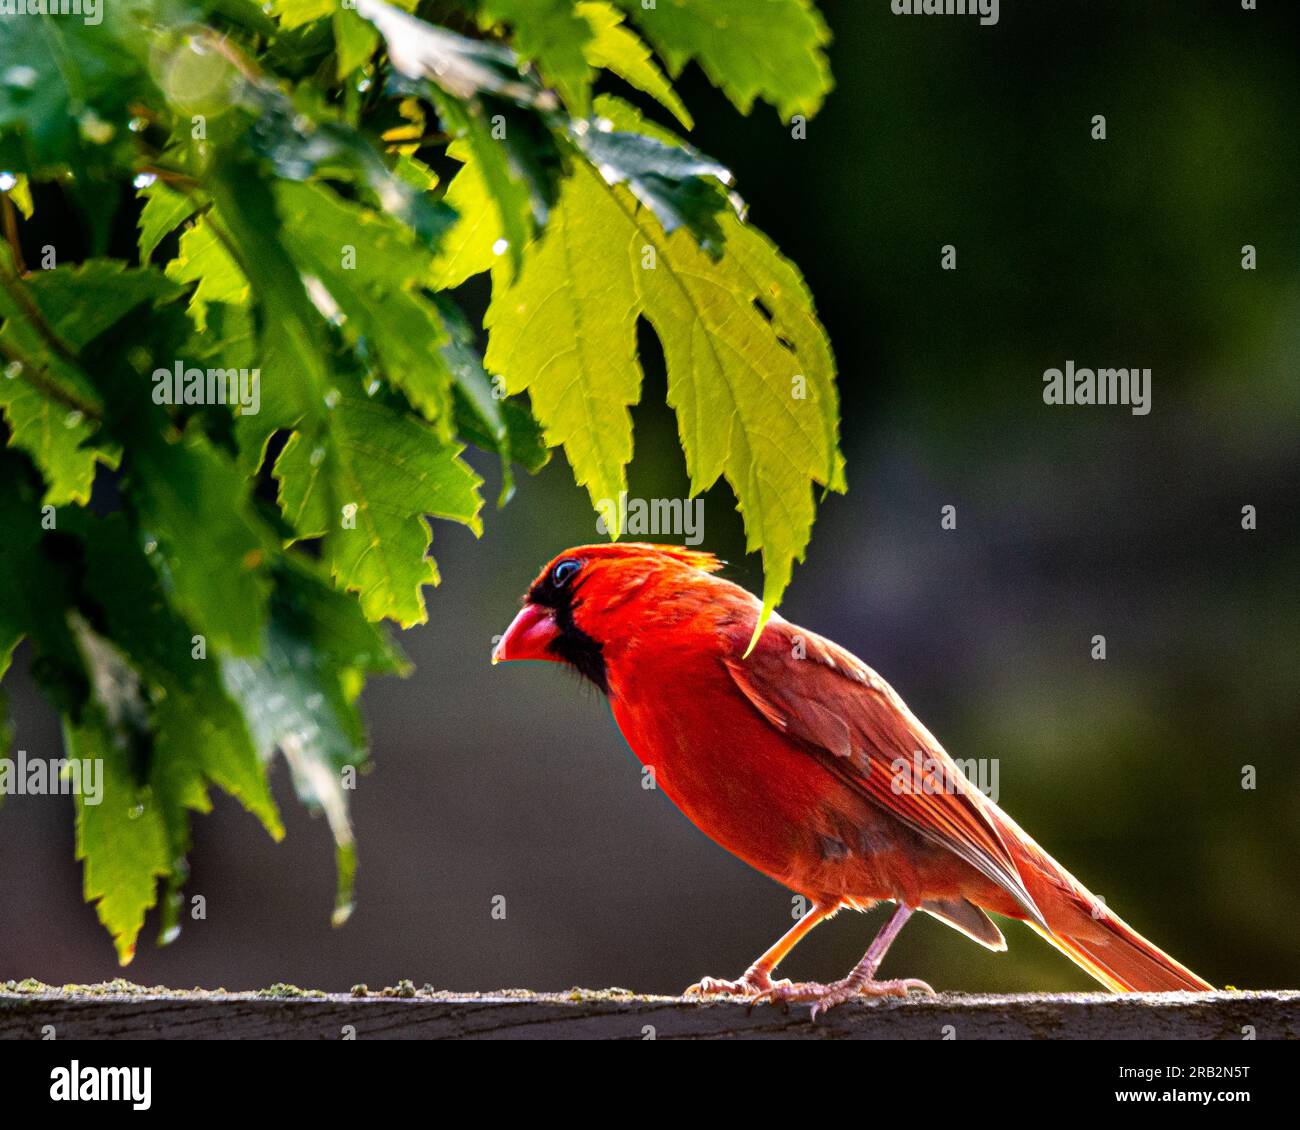 Un cardinale settentrionale con una lunga coda, un corpo rosso e un becco molto spesso. La mattina presto, in mezzo al verde lussureggiante, si è seduto su una recinzione a bordo strada. Foto Stock